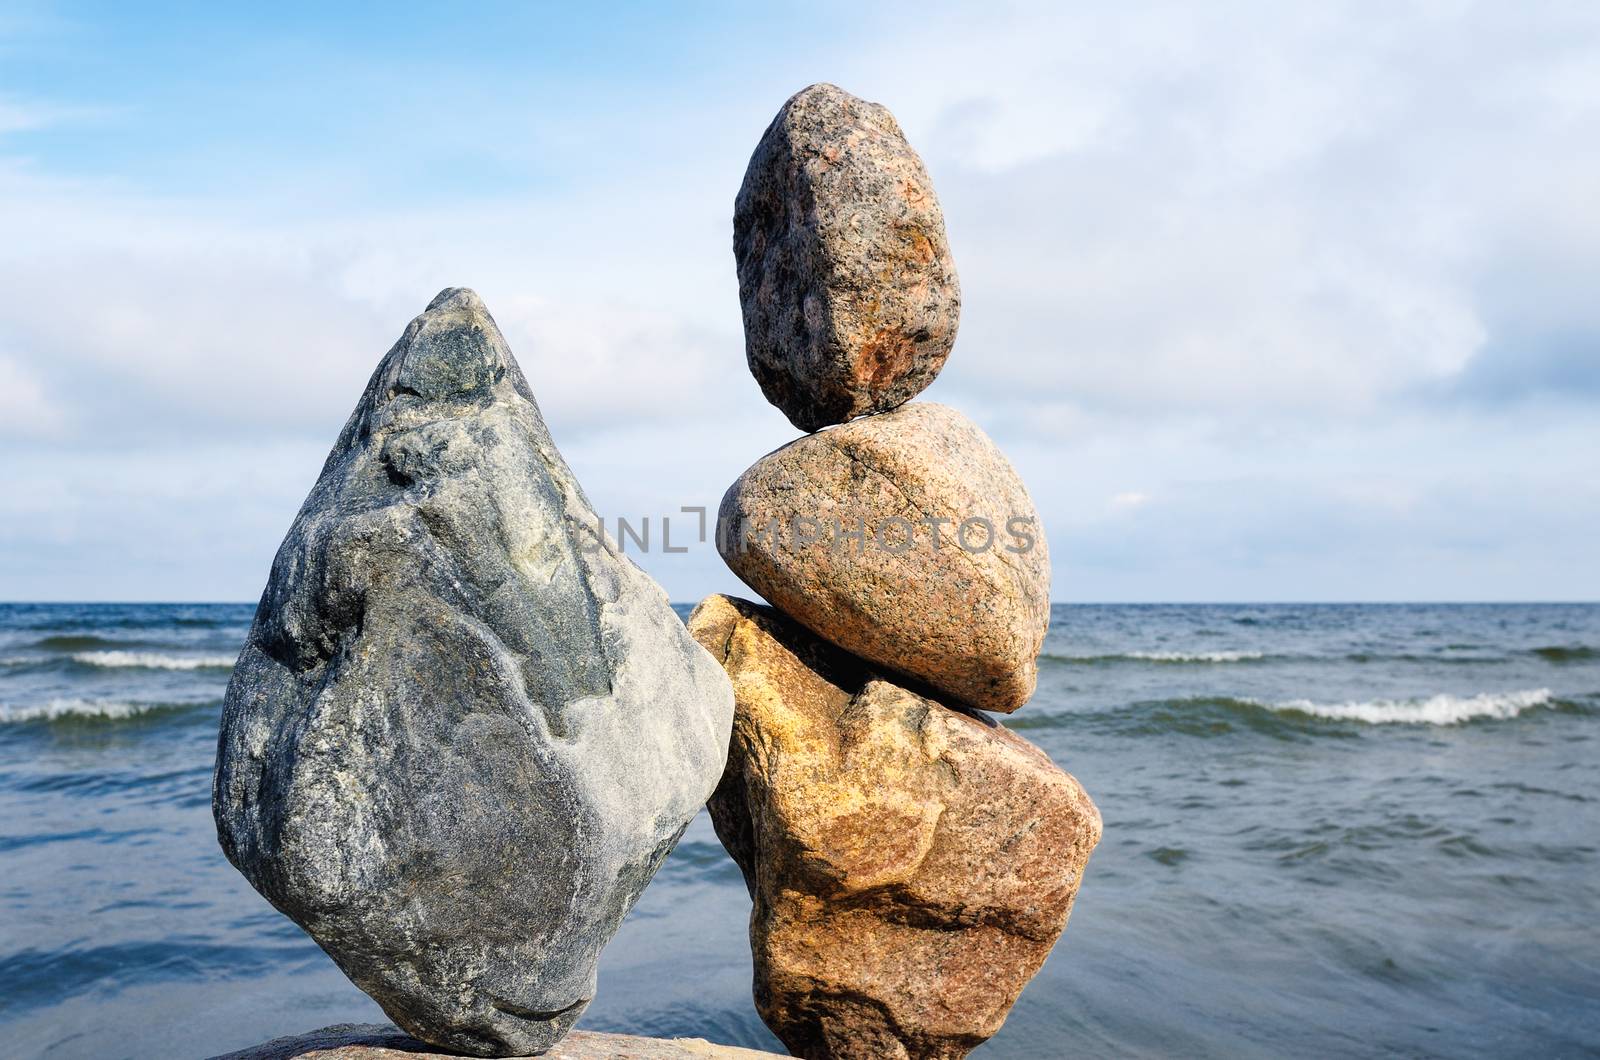 Zen Balance of stones on the seacoast